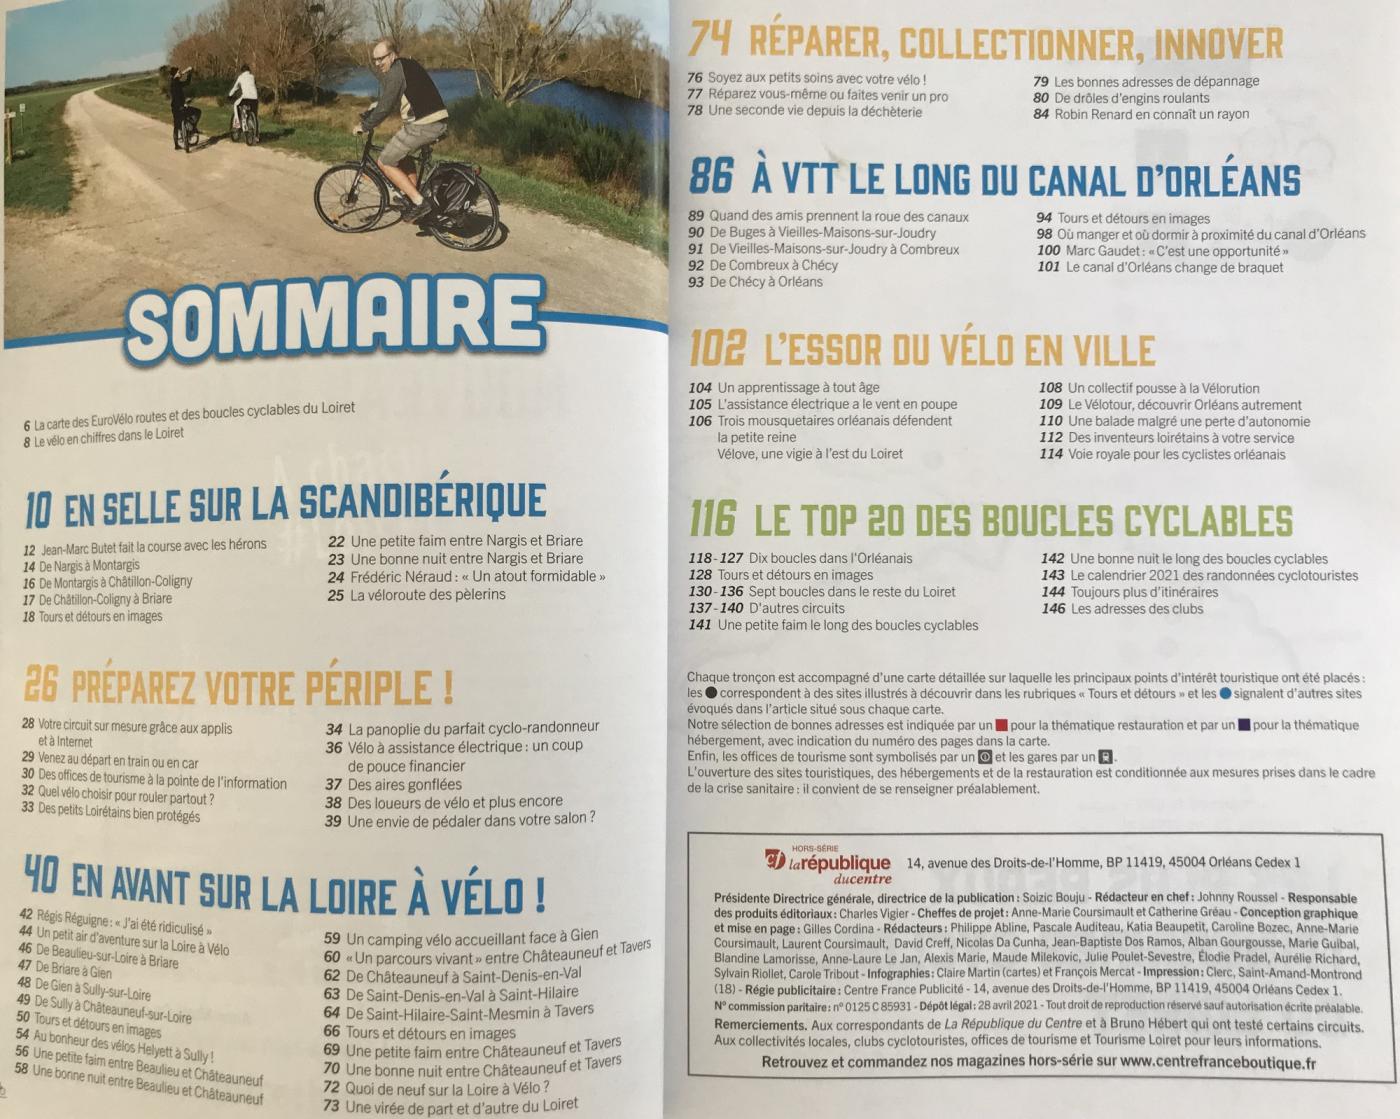 Loiret à vélo, un guide pour faciliter vos balades à vélo ! - guide